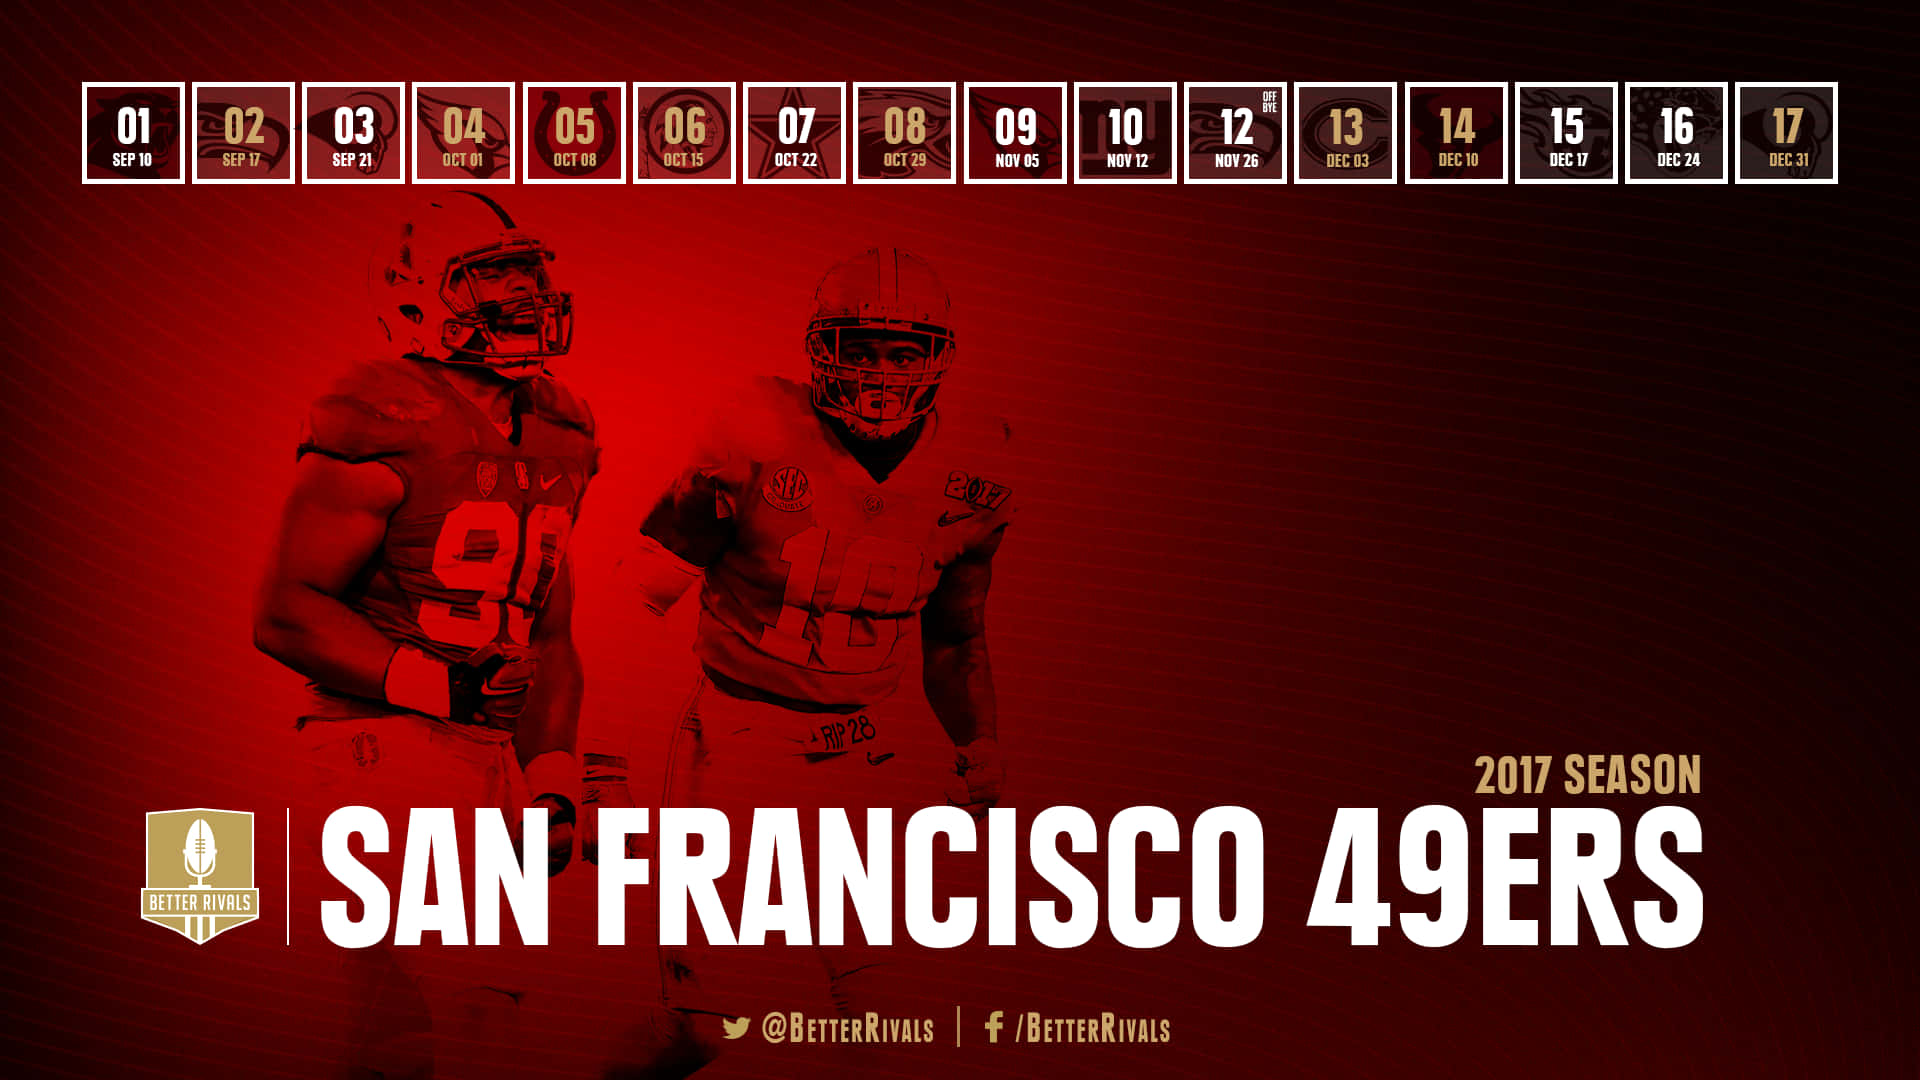 Uniscitie Dimostra Il Tuo Sostegno Per I San Francisco 49ers